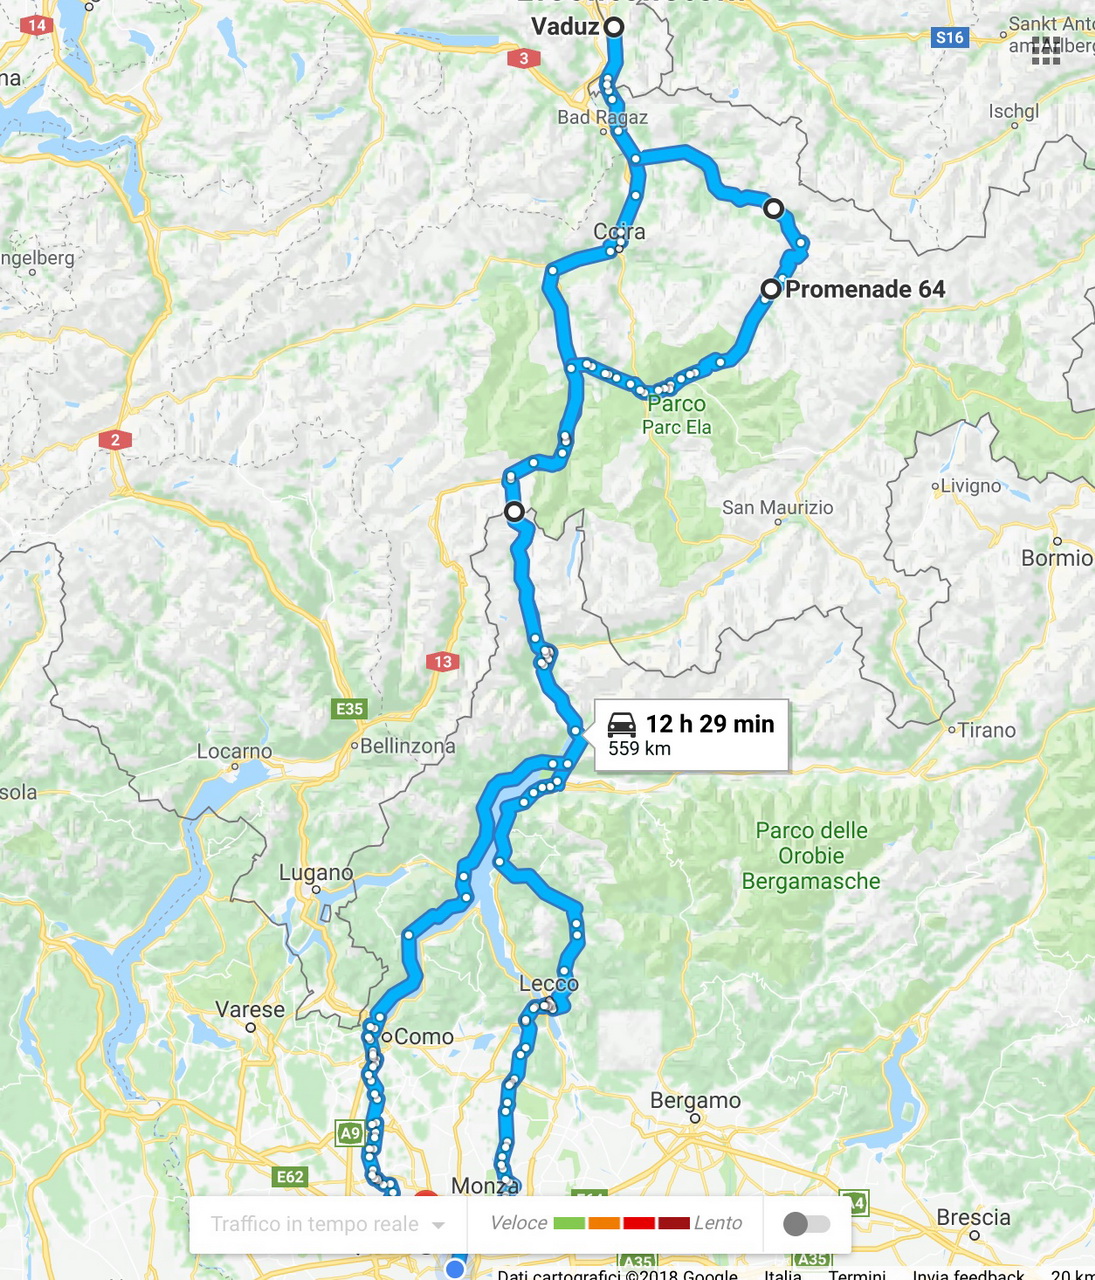 Itinerario Milano - Vaduz Liechtenstein 2018